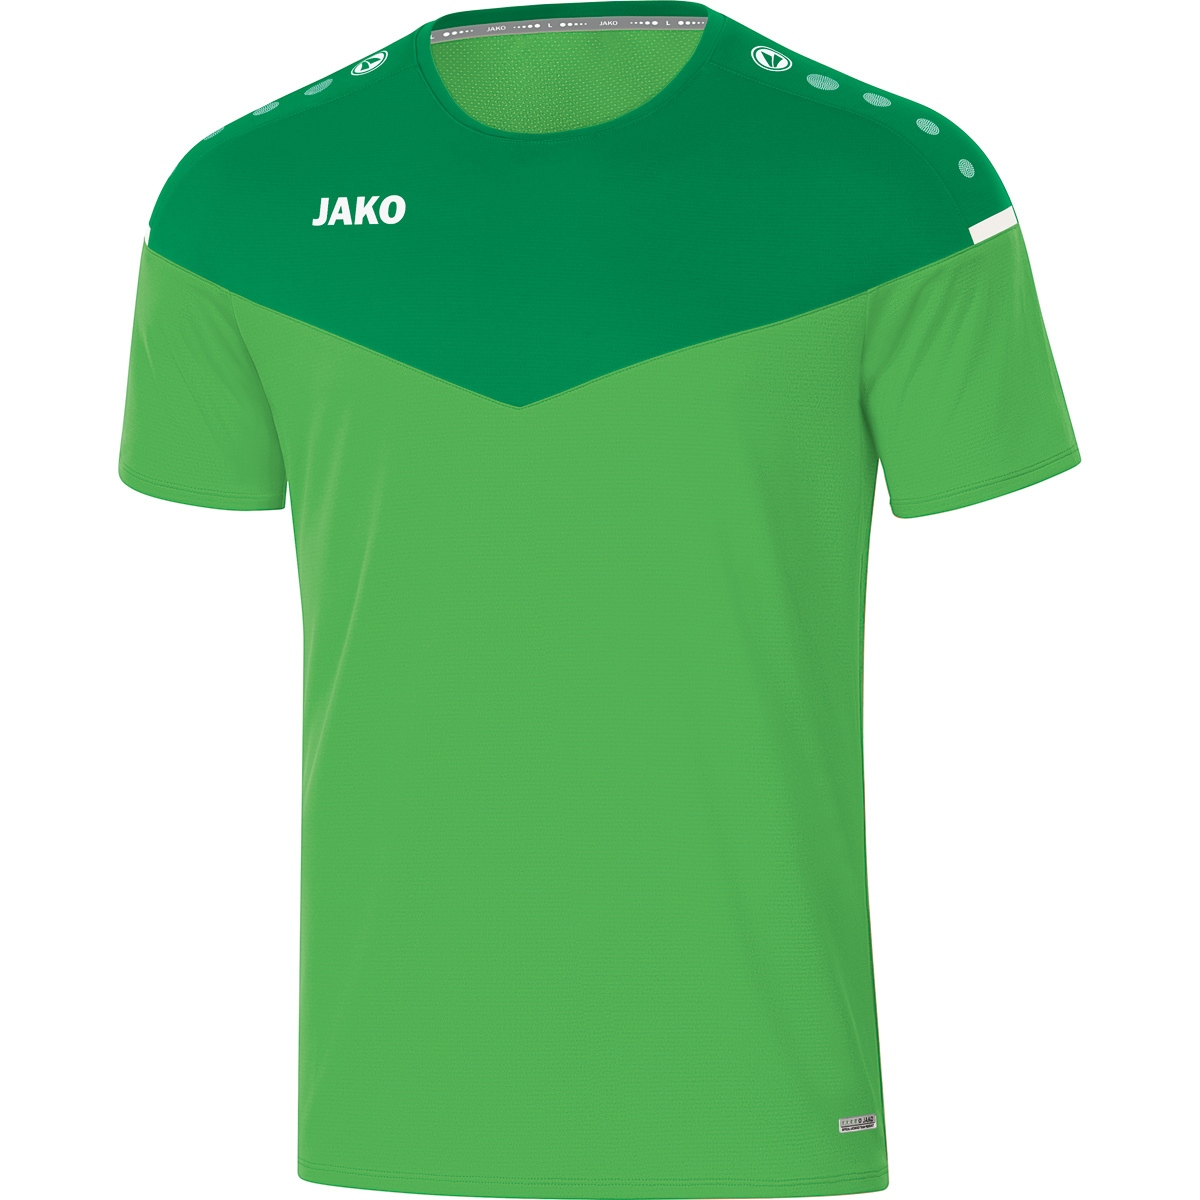 JAKO T-Shirt Gr. 2.0 6120 4XL, green/sportgrün, soft Herren, Champ